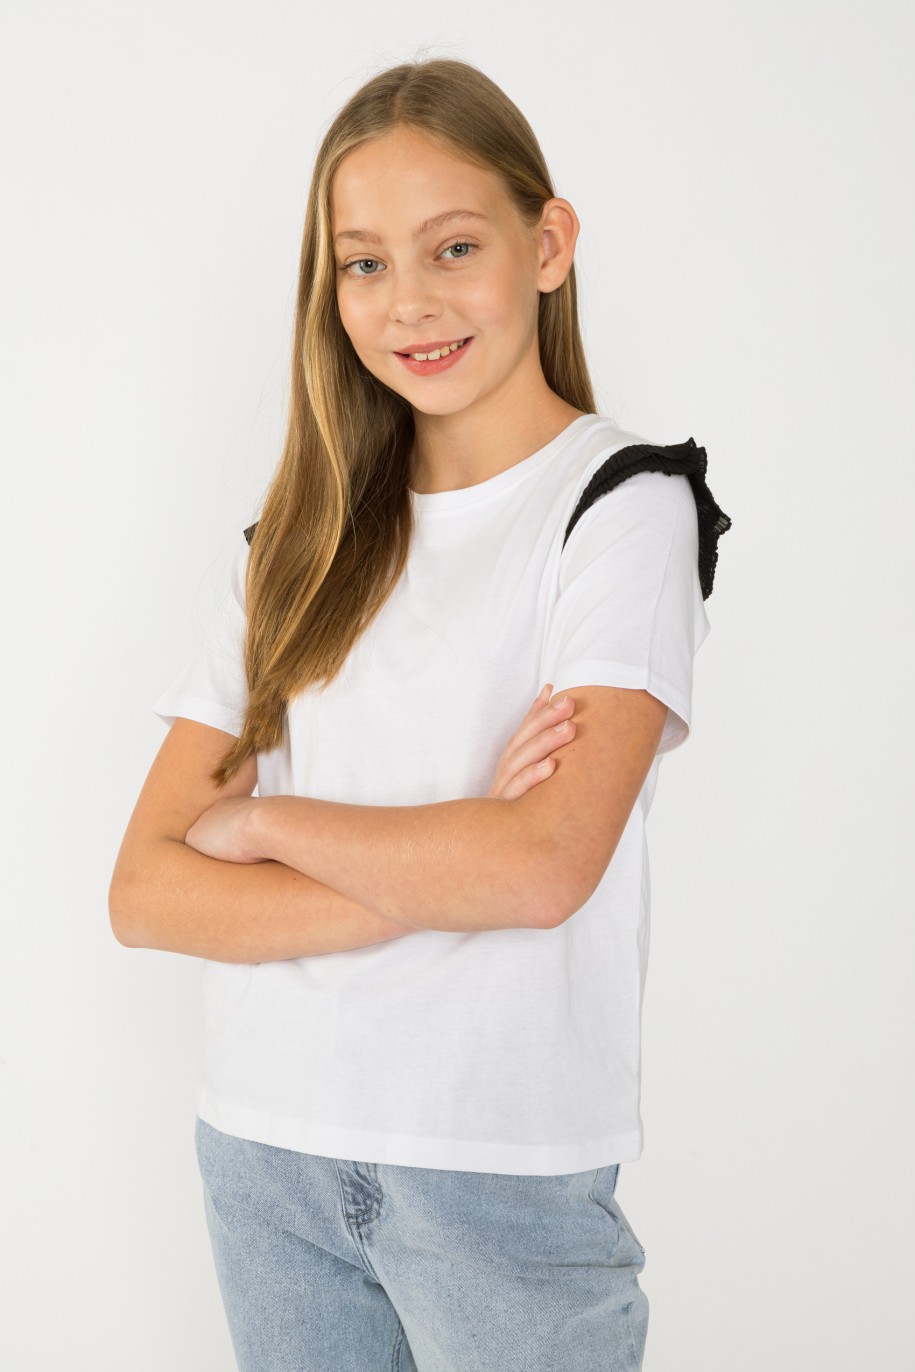 Biała bluzka z falbankami dla dziewczyny - 33804